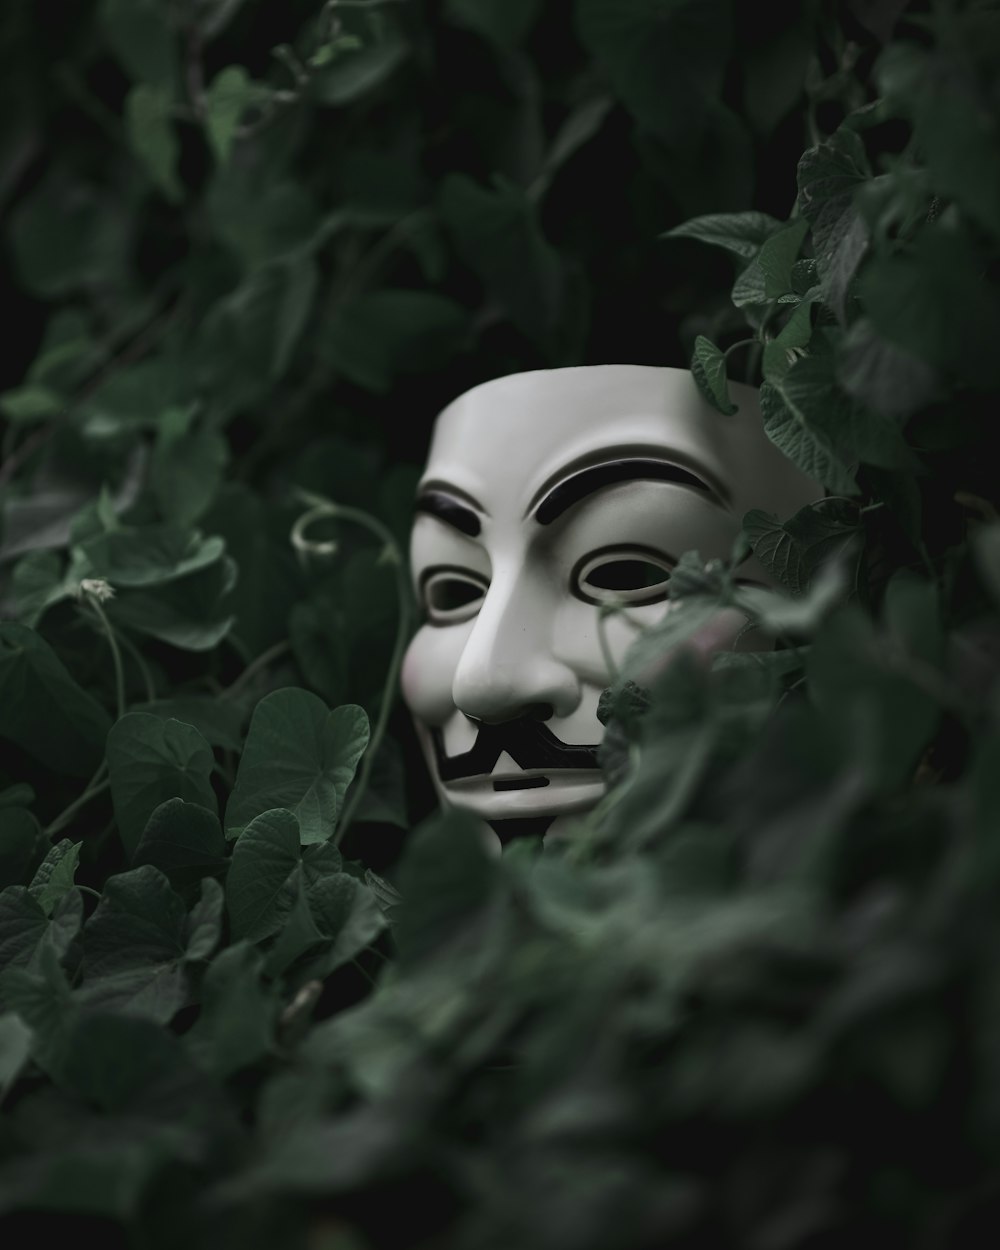 messa a fuoco selettiva a corto di maschera di Guy Fawkes che si nasconde dietro le piante